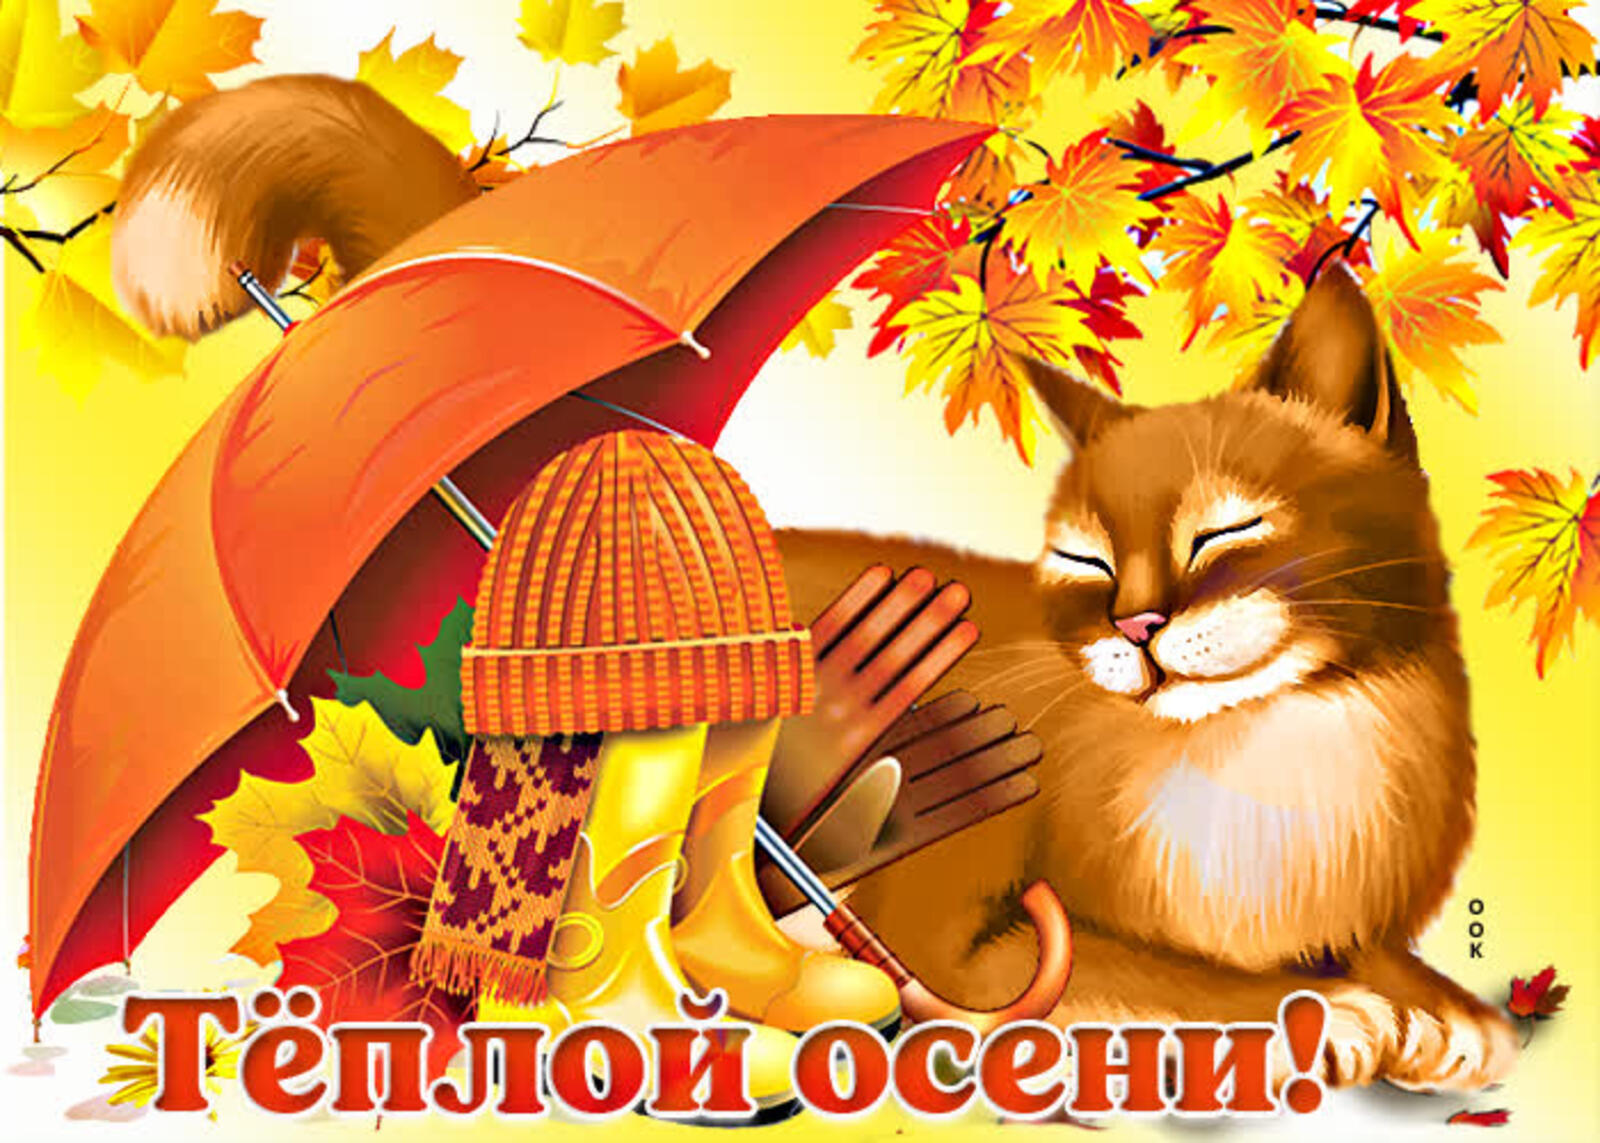 一张以伞 我用爱祝你幸福 秋季为主题的明信片